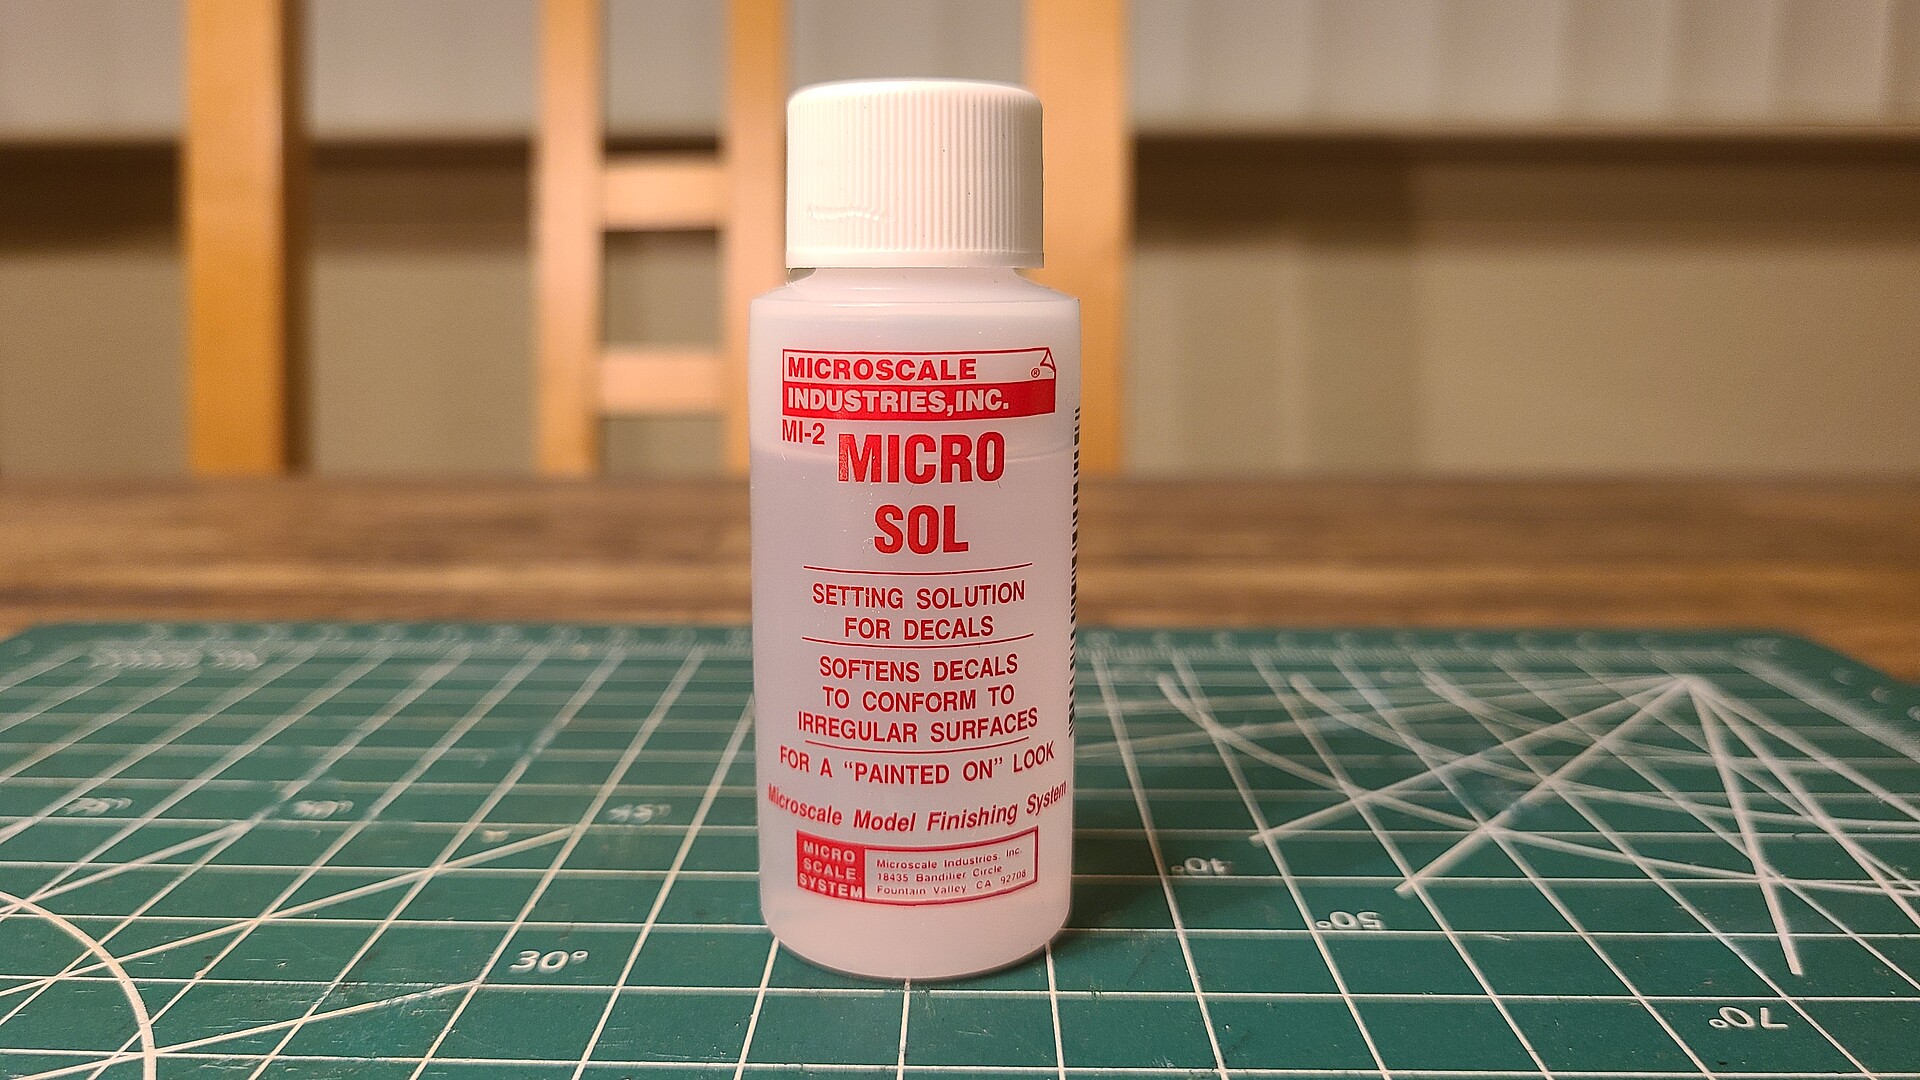 Microscale Micro Sol Setting Solution, 1 oz Model Railroad Scratch